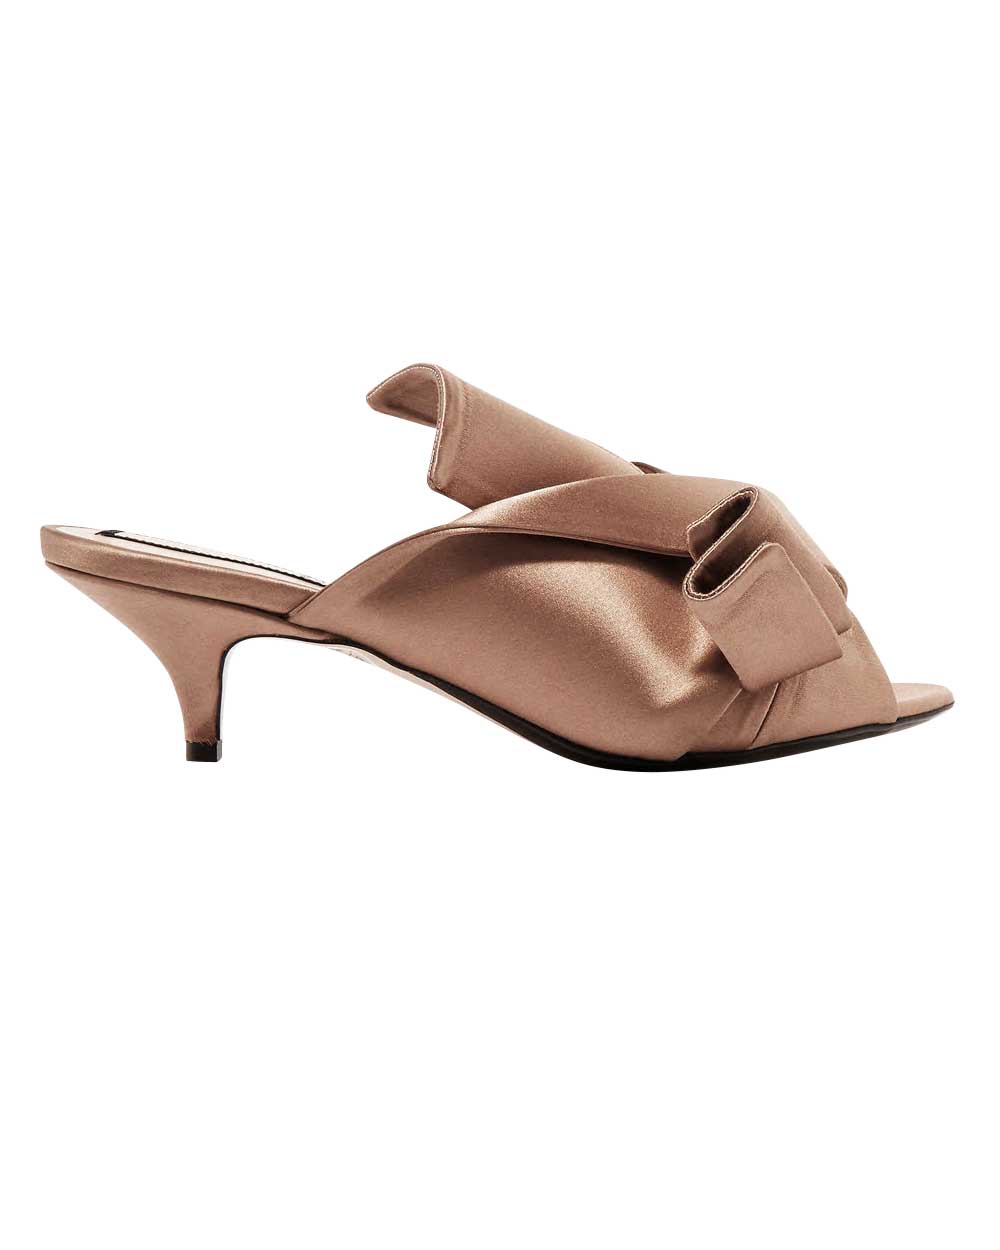 No. 21 heels, $784, from Net-a-Porter